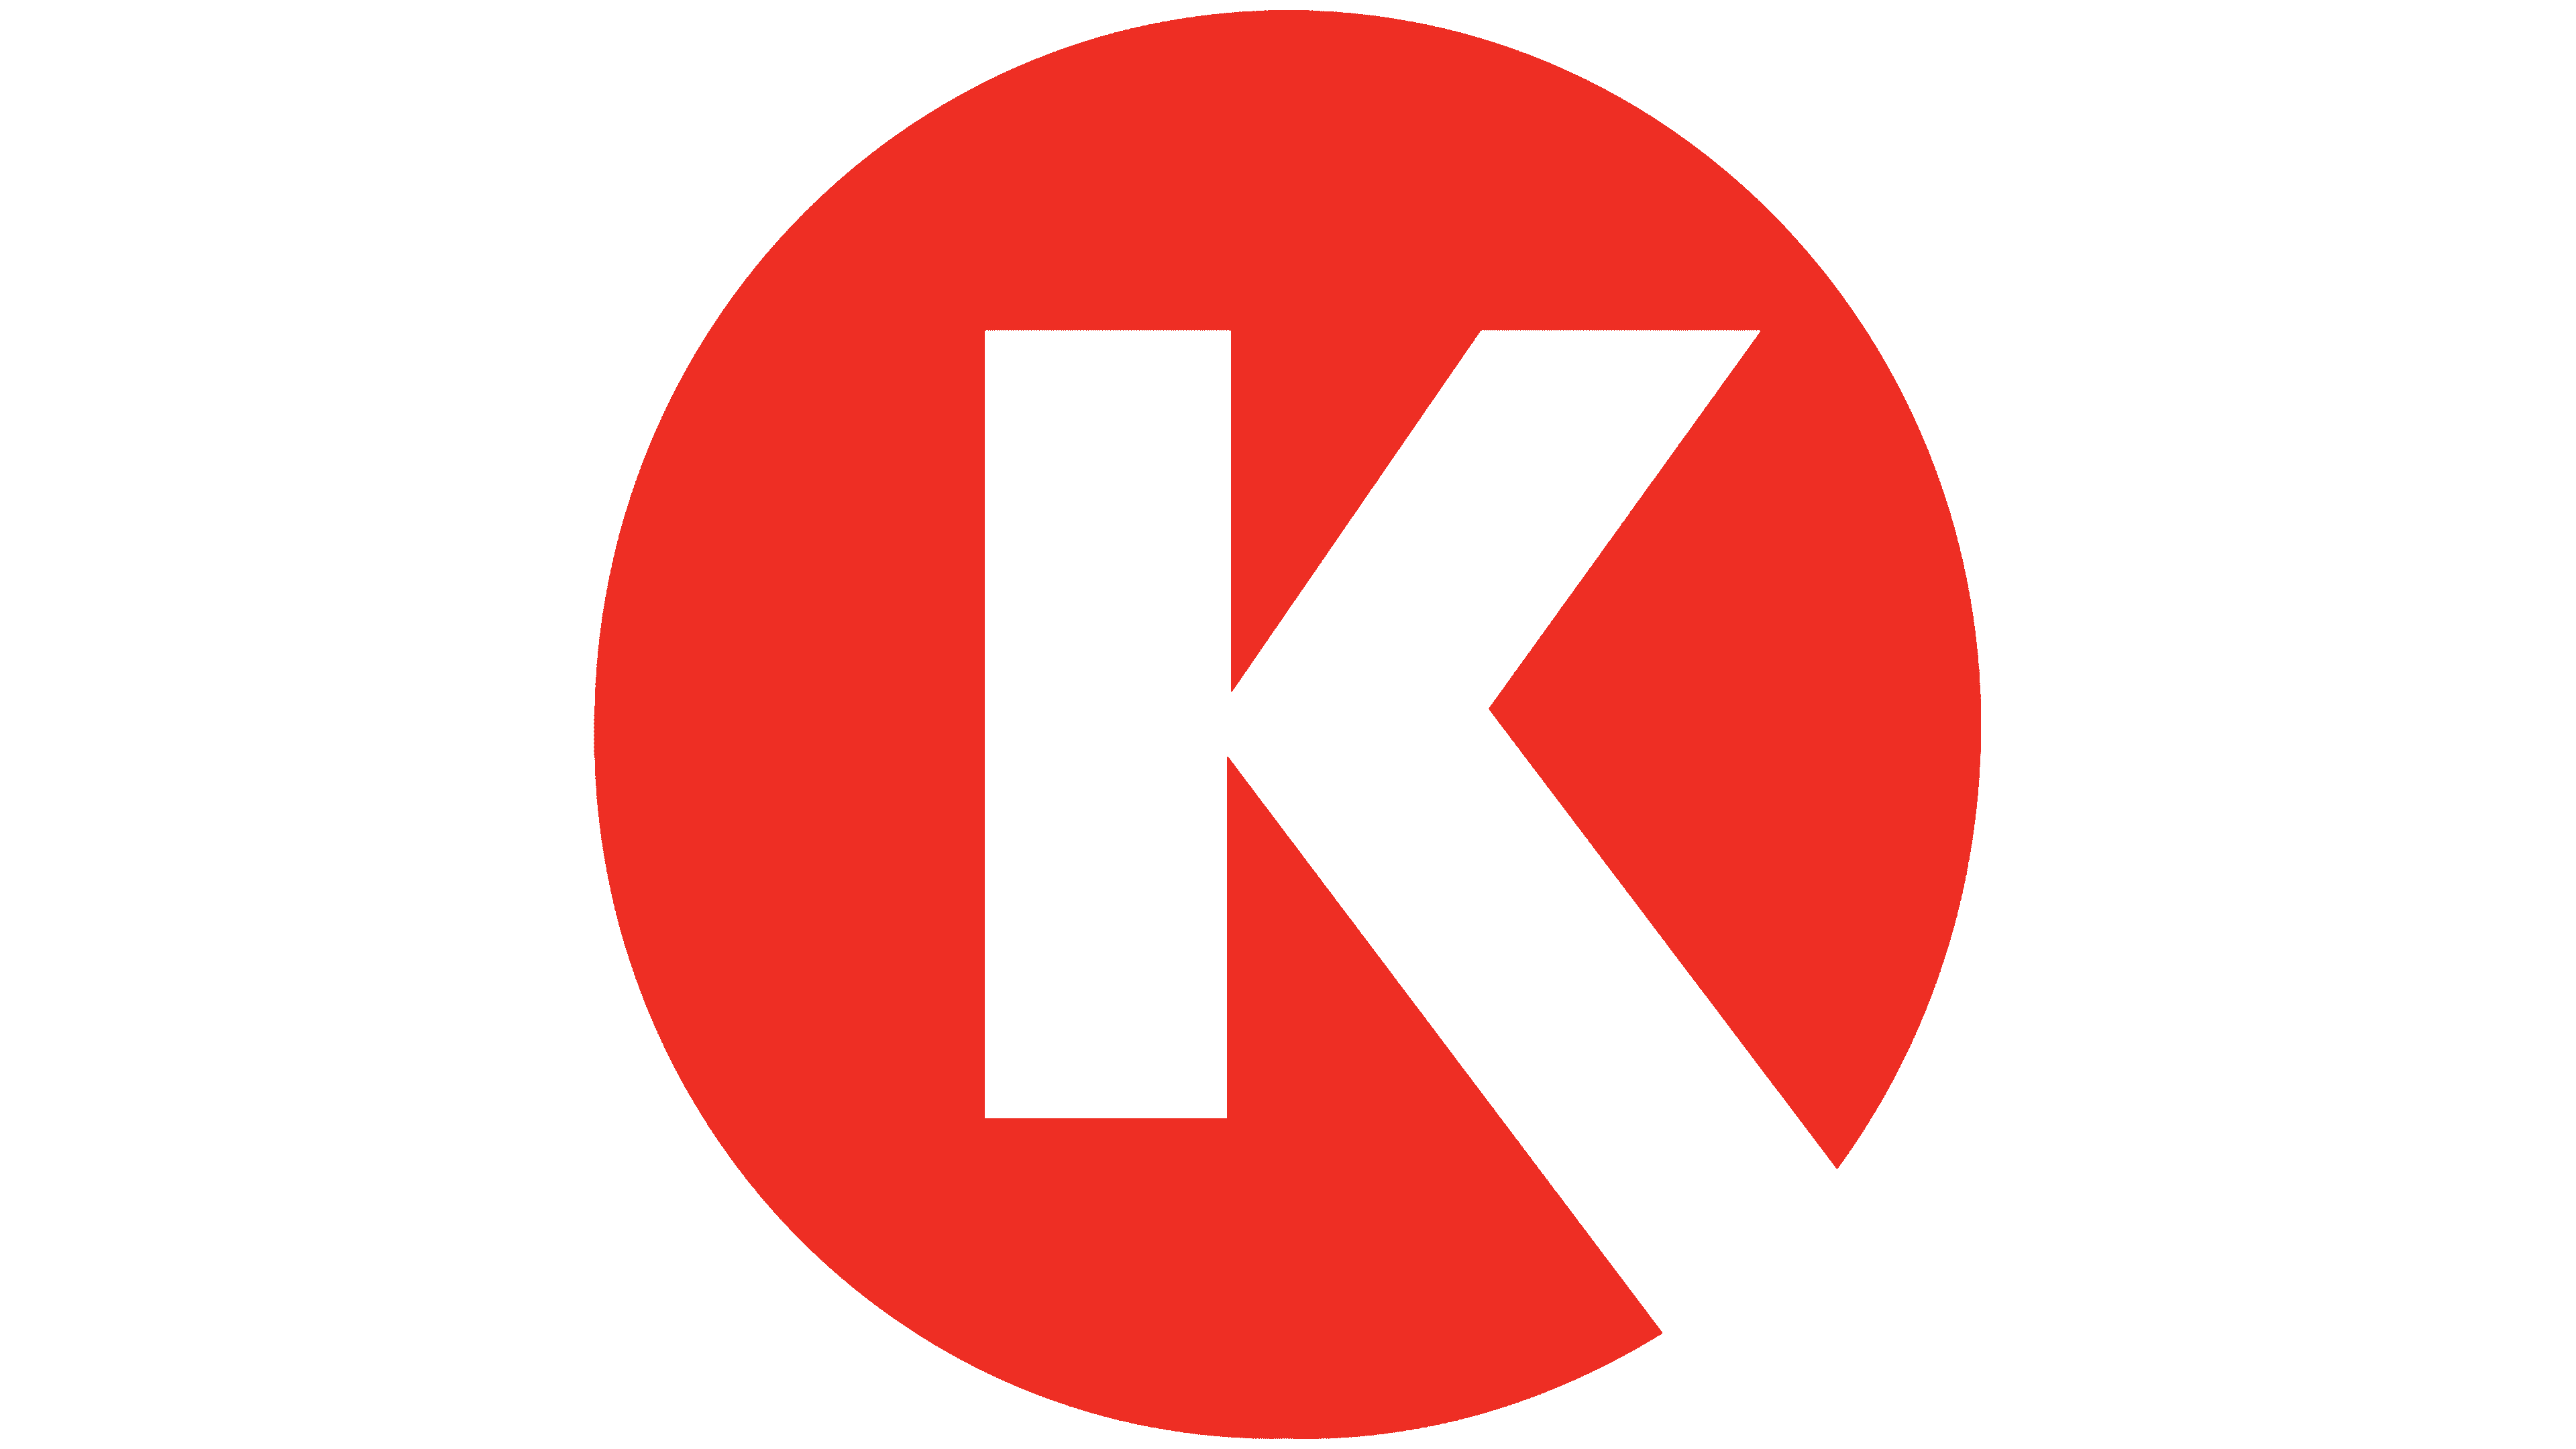 circle k logo png